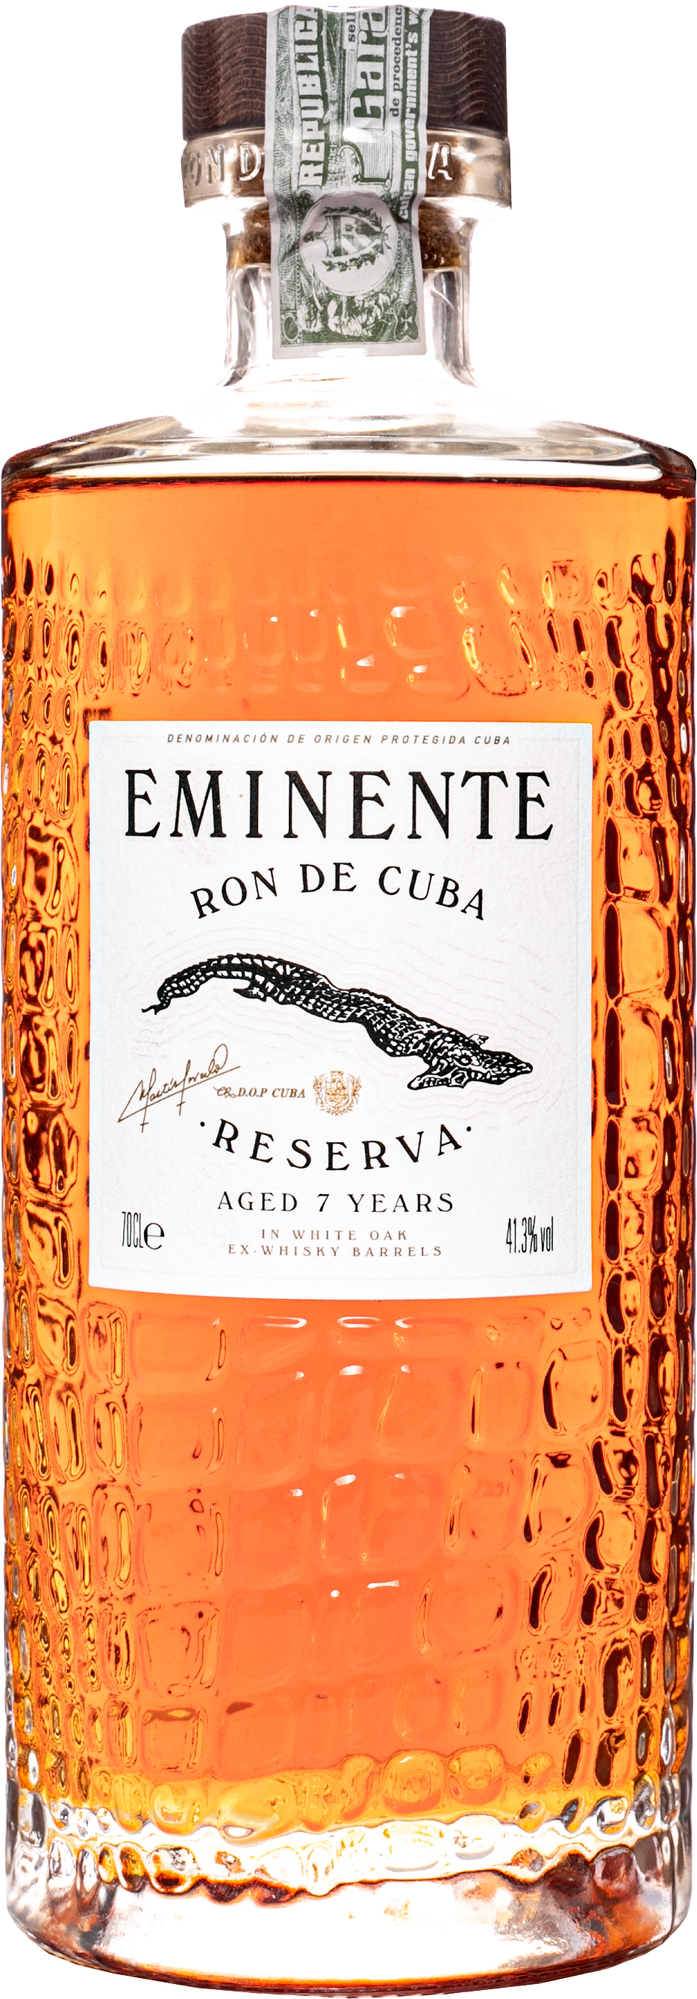 Eminent reserve 7 yo Ron de Cuba